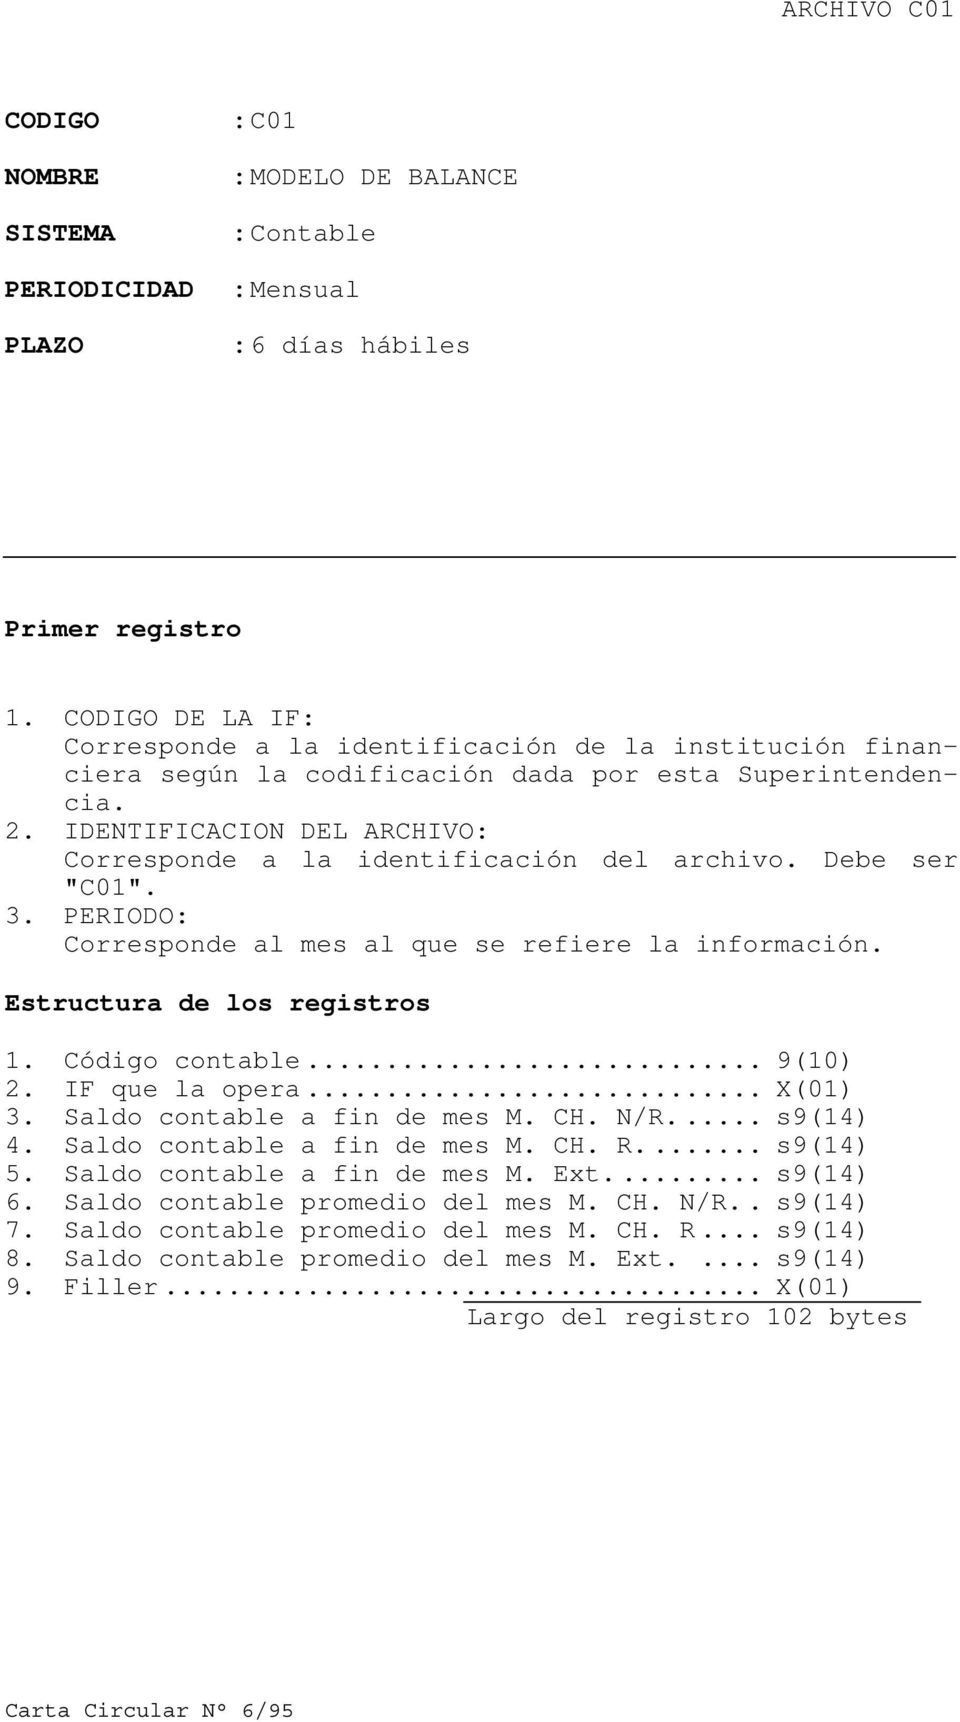 IDENTIFICACION DEL ARCHIVO: Corresponde a la identificación del archivo. Debe ser "C01". 3. PERIODO: Corresponde al mes al que se refiere la información. Estructura de los registros 1.